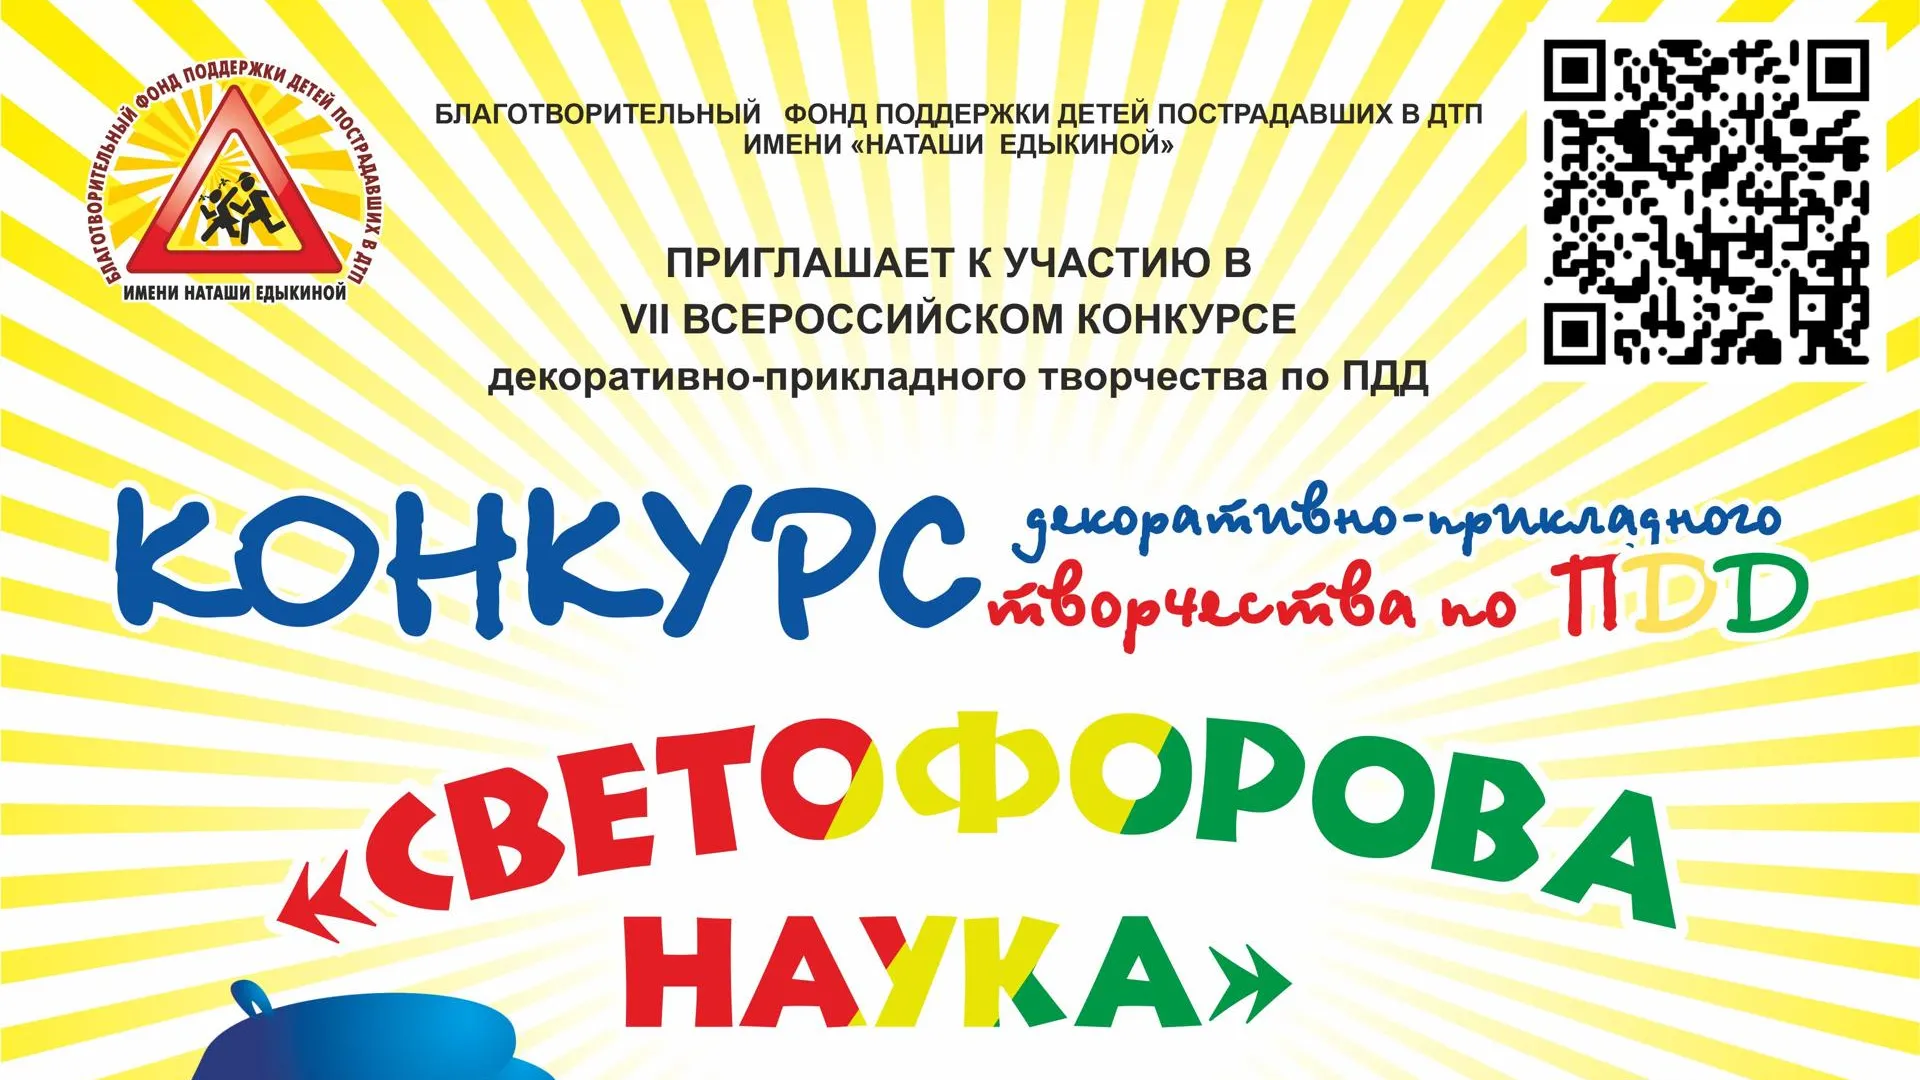 Жителей Подмосковья приглашают к участию в конкурсе по ПДД «Светофорова наука»